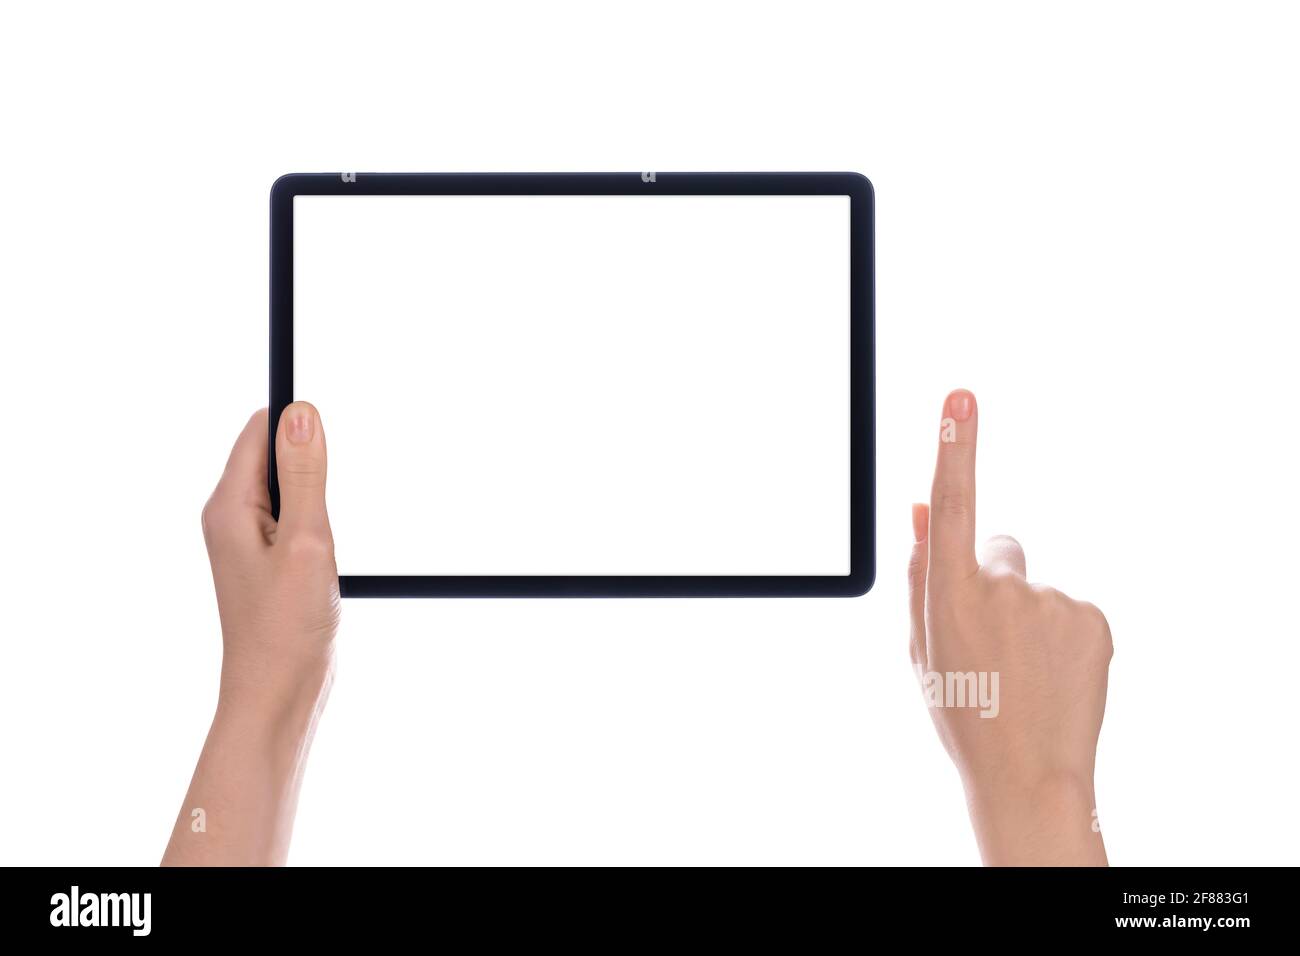 Hände, die einen Tablet-Computer mit weißem Bildschirm halten. Weibliche Hände zeigen leeren Bildschirm des modernen digitalen Tablets. Tablet-pc mit Handhaltung, isoliert auf Weiß Stockfoto